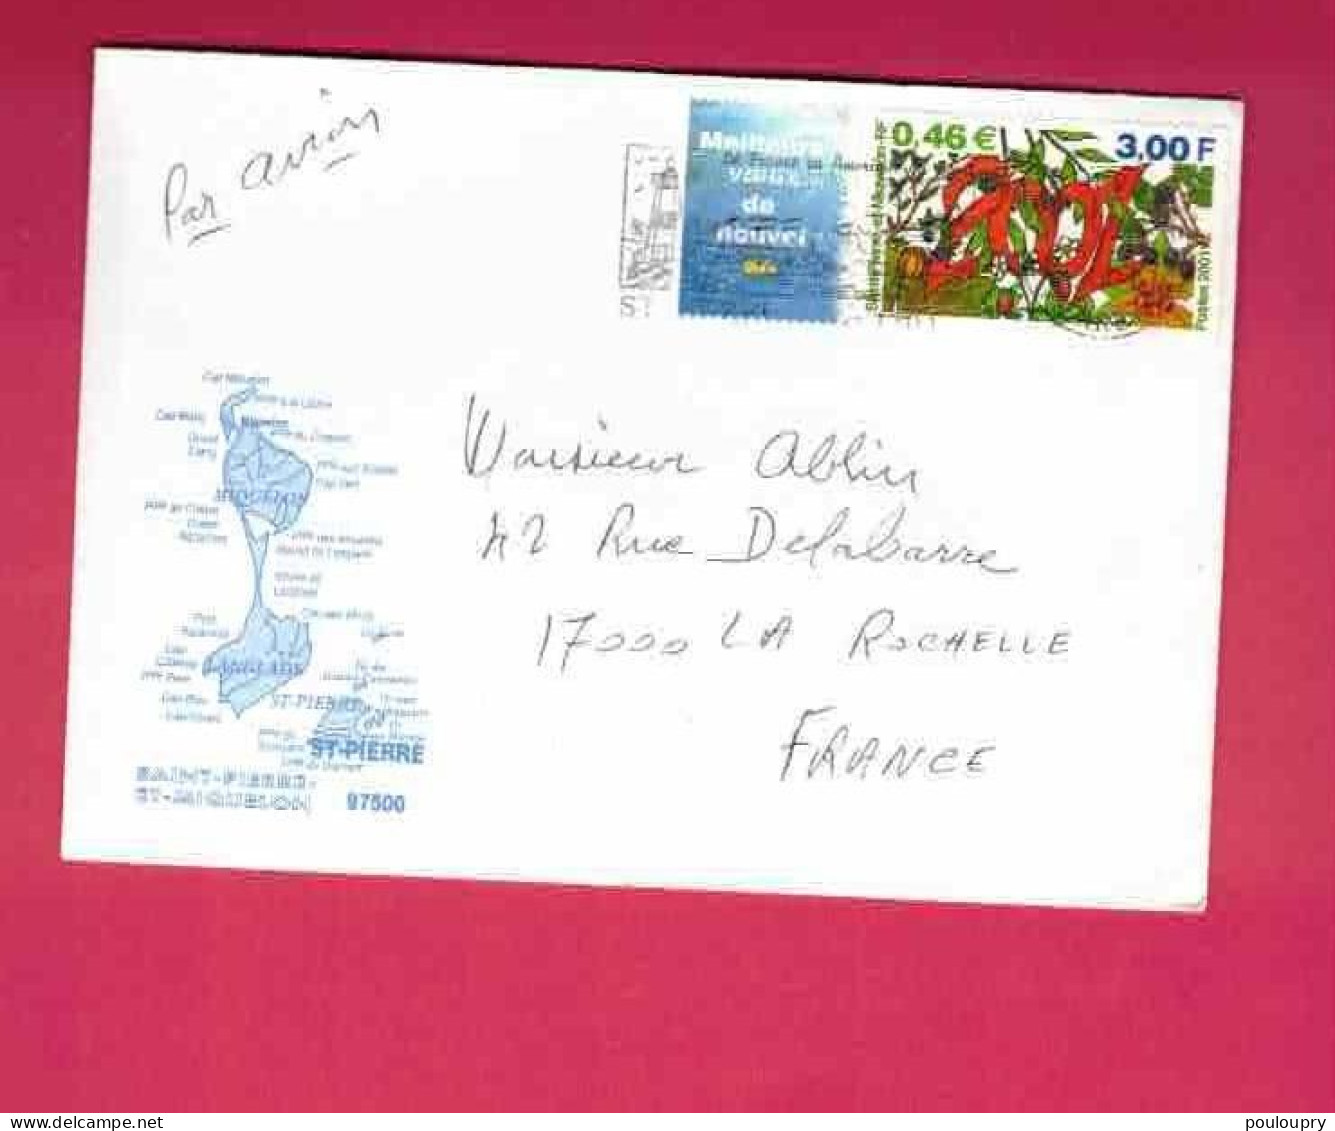 Lettre De 2001 Pour La France - YT N° 737 - Meilleurs Voeux - Covers & Documents